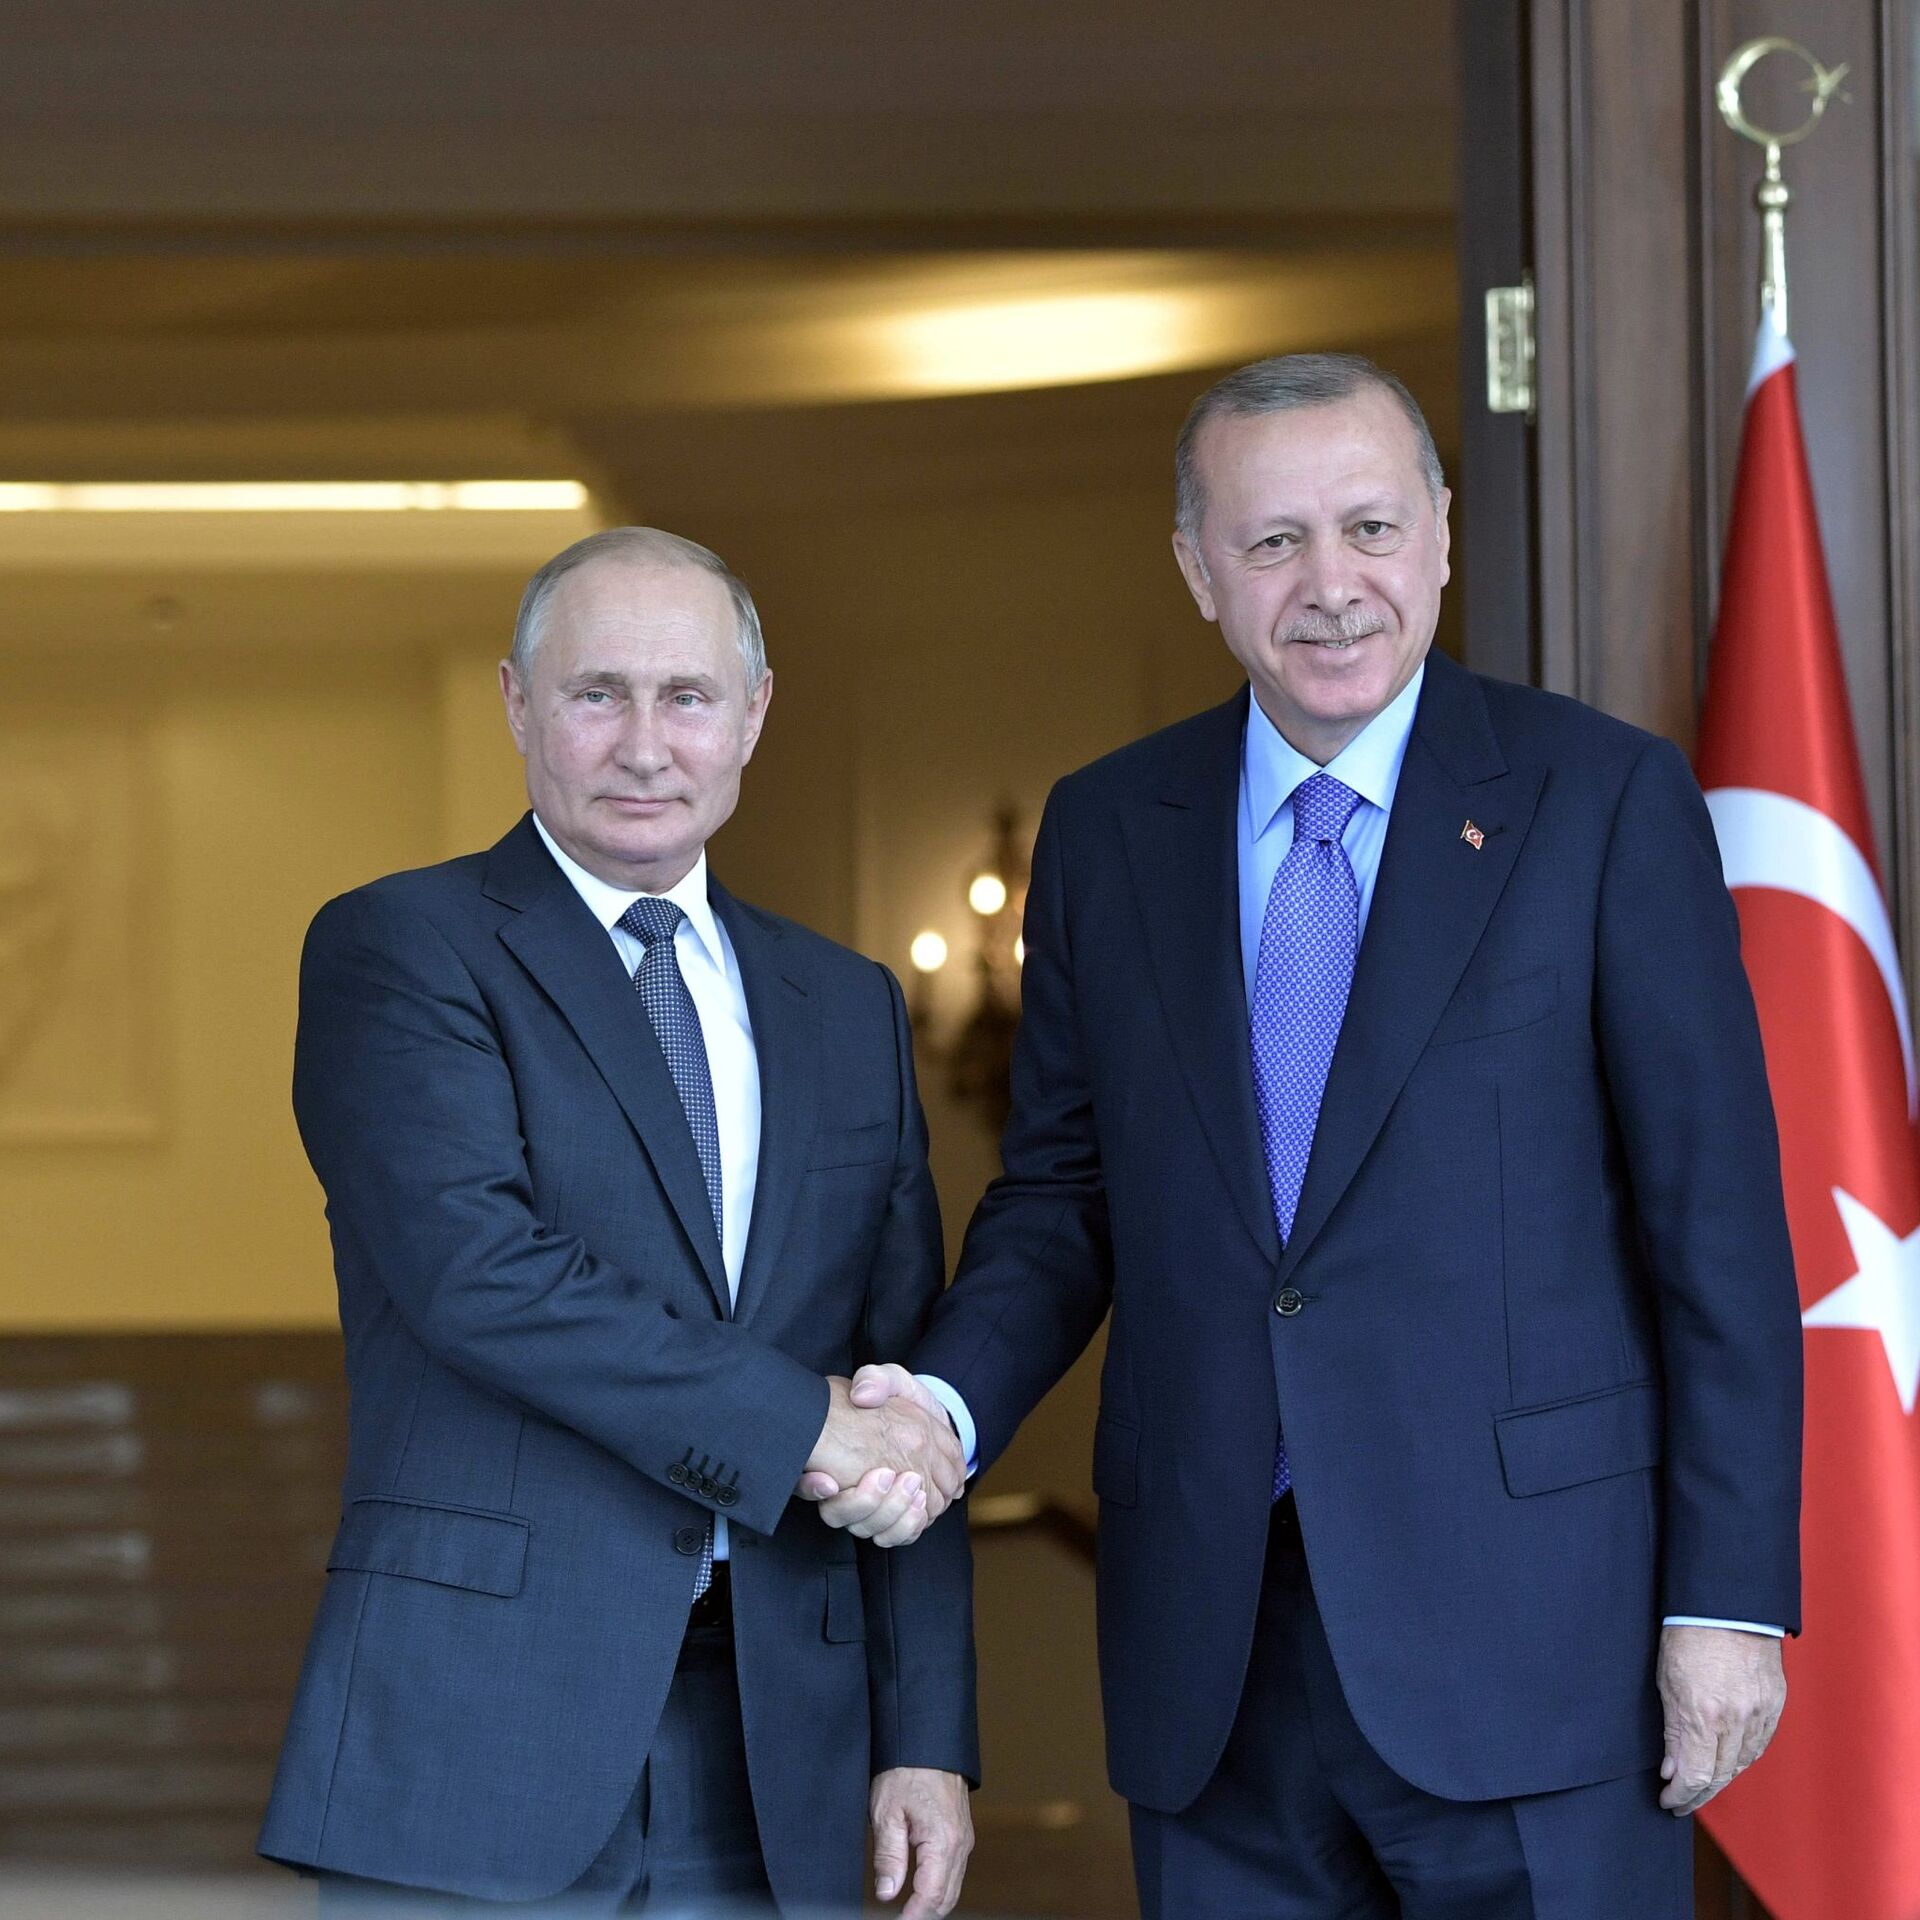 Путин и Эрдоган обсудили российско-турецкие отношения